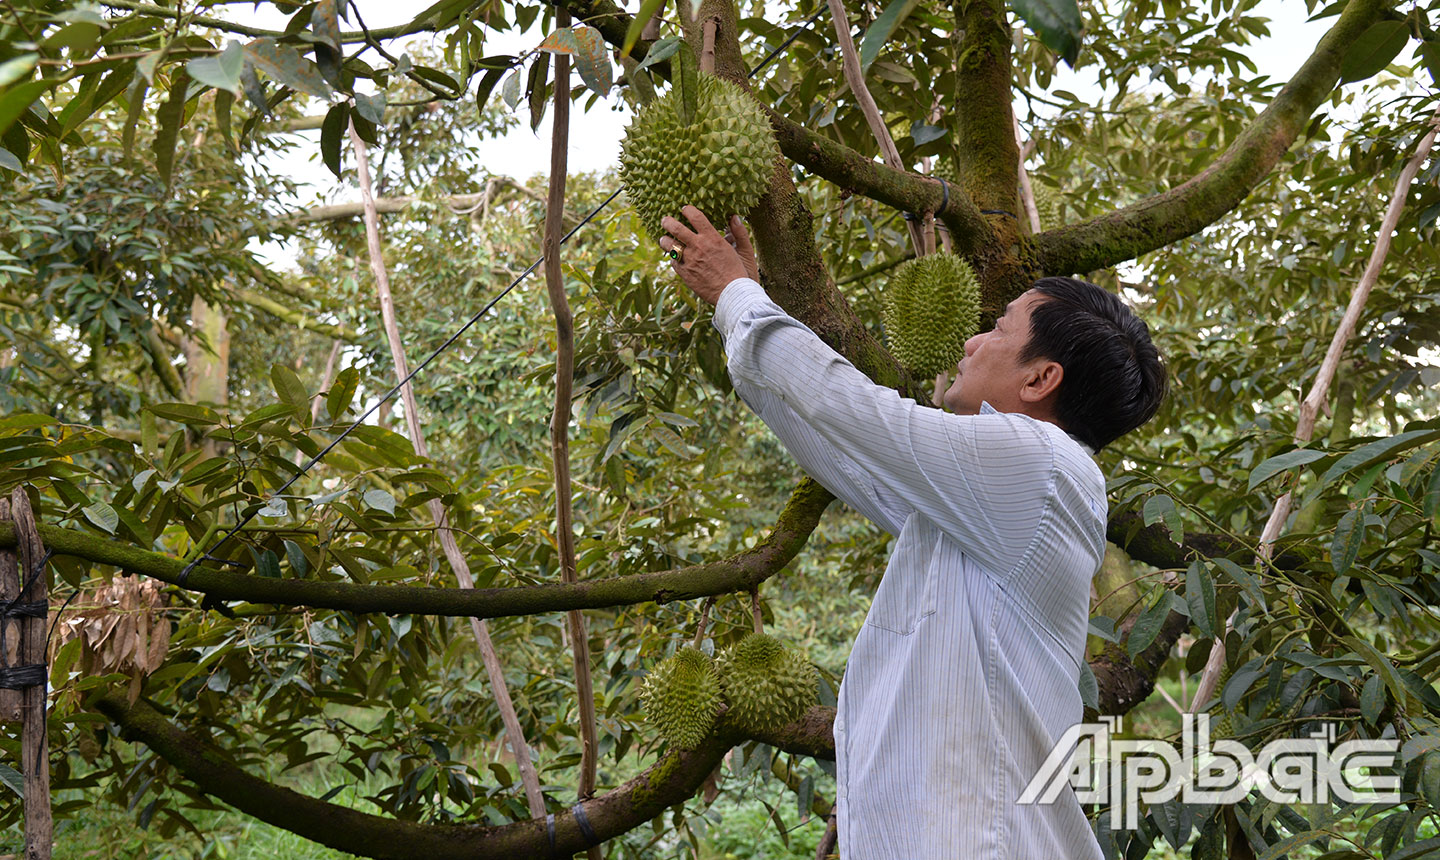 Tập trung nâng cao chất lượng trái sầu riêng đang là mục tiêu ngành Nông nghiệp hướng tới.